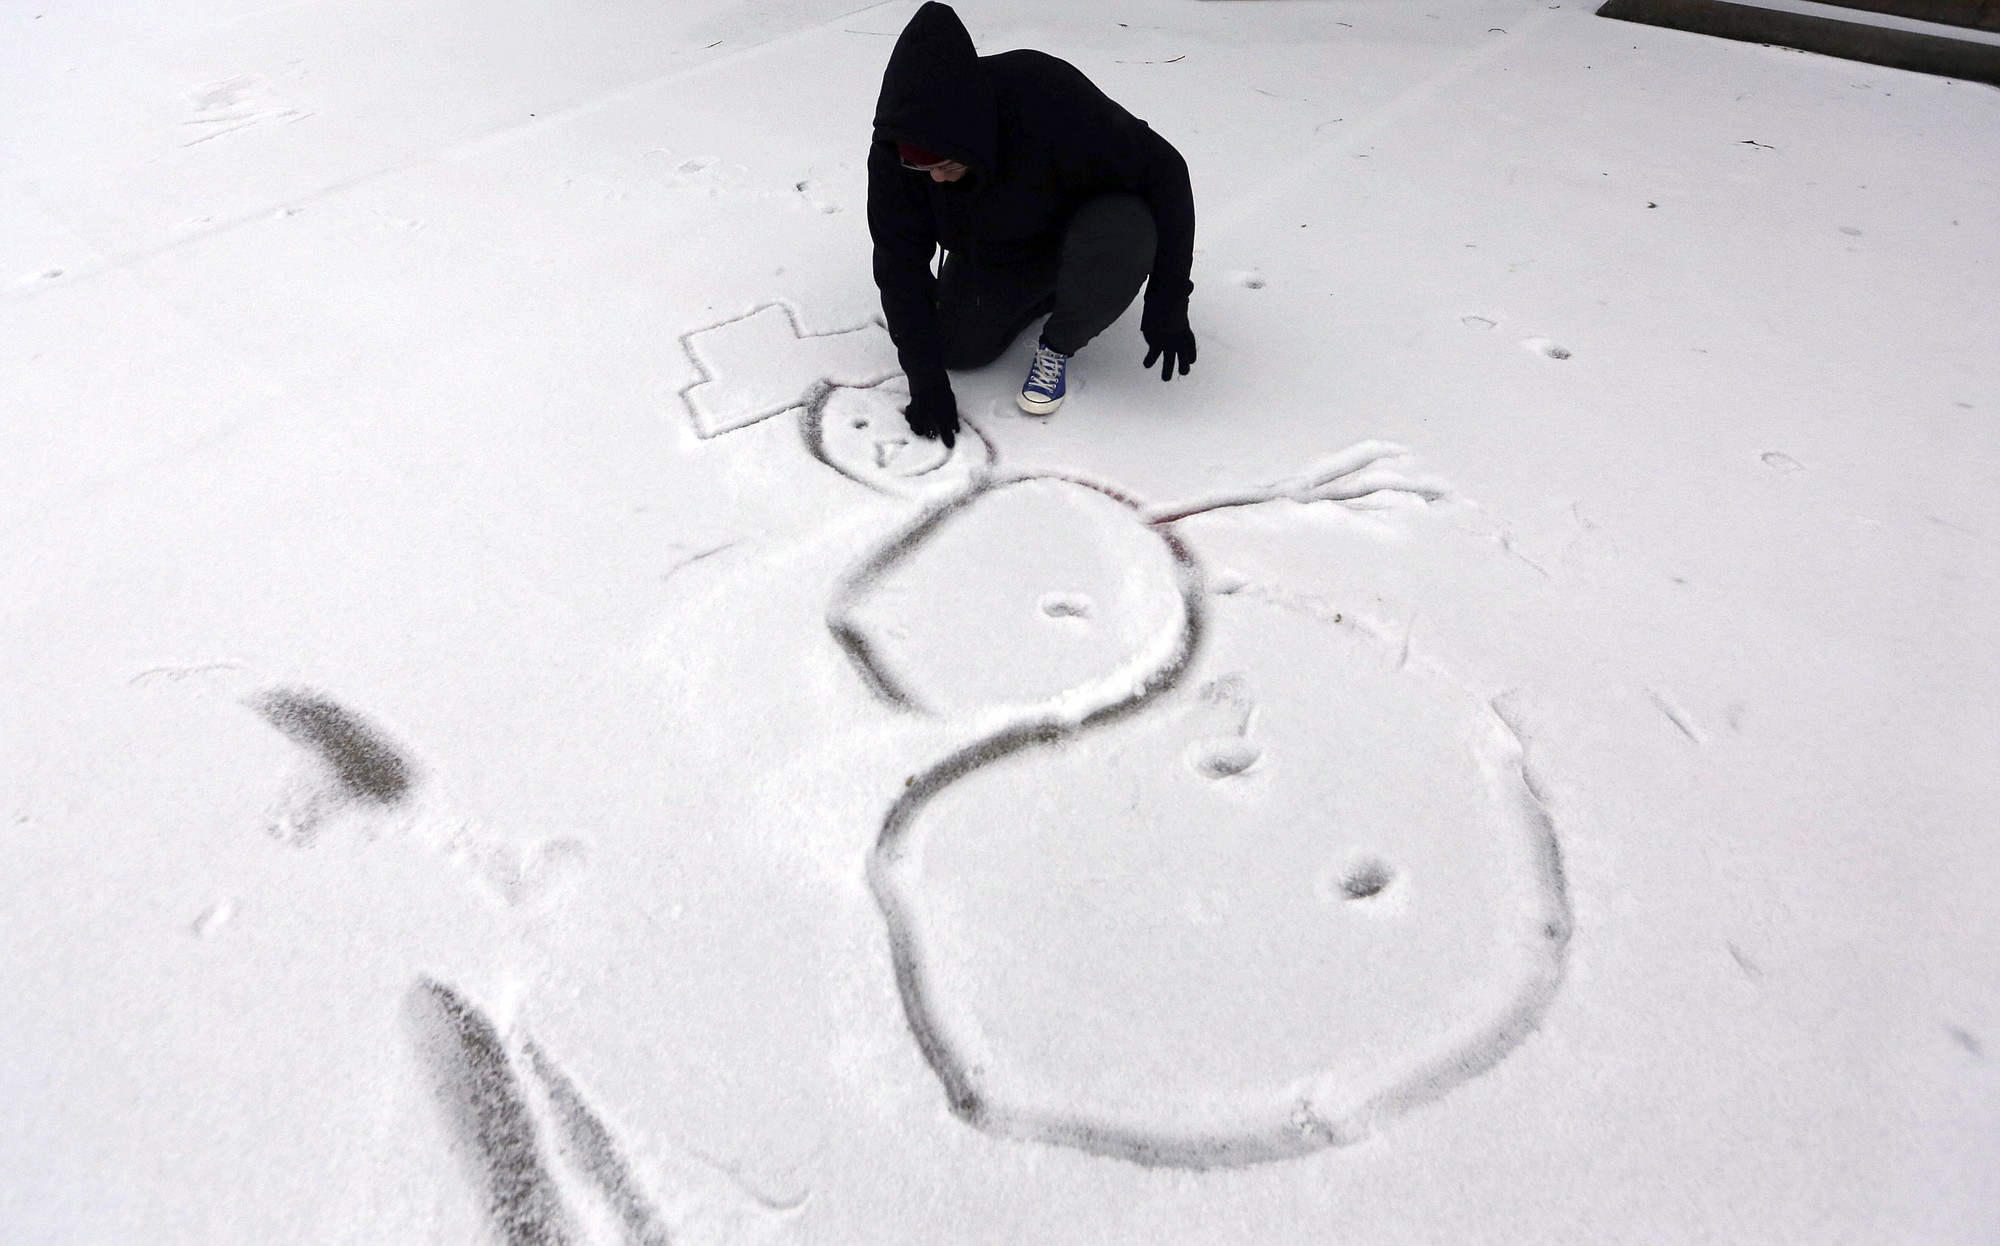 High school freshman Selena Perez, 16, draws a snowman on the ground Monday in Richardson, Texas.